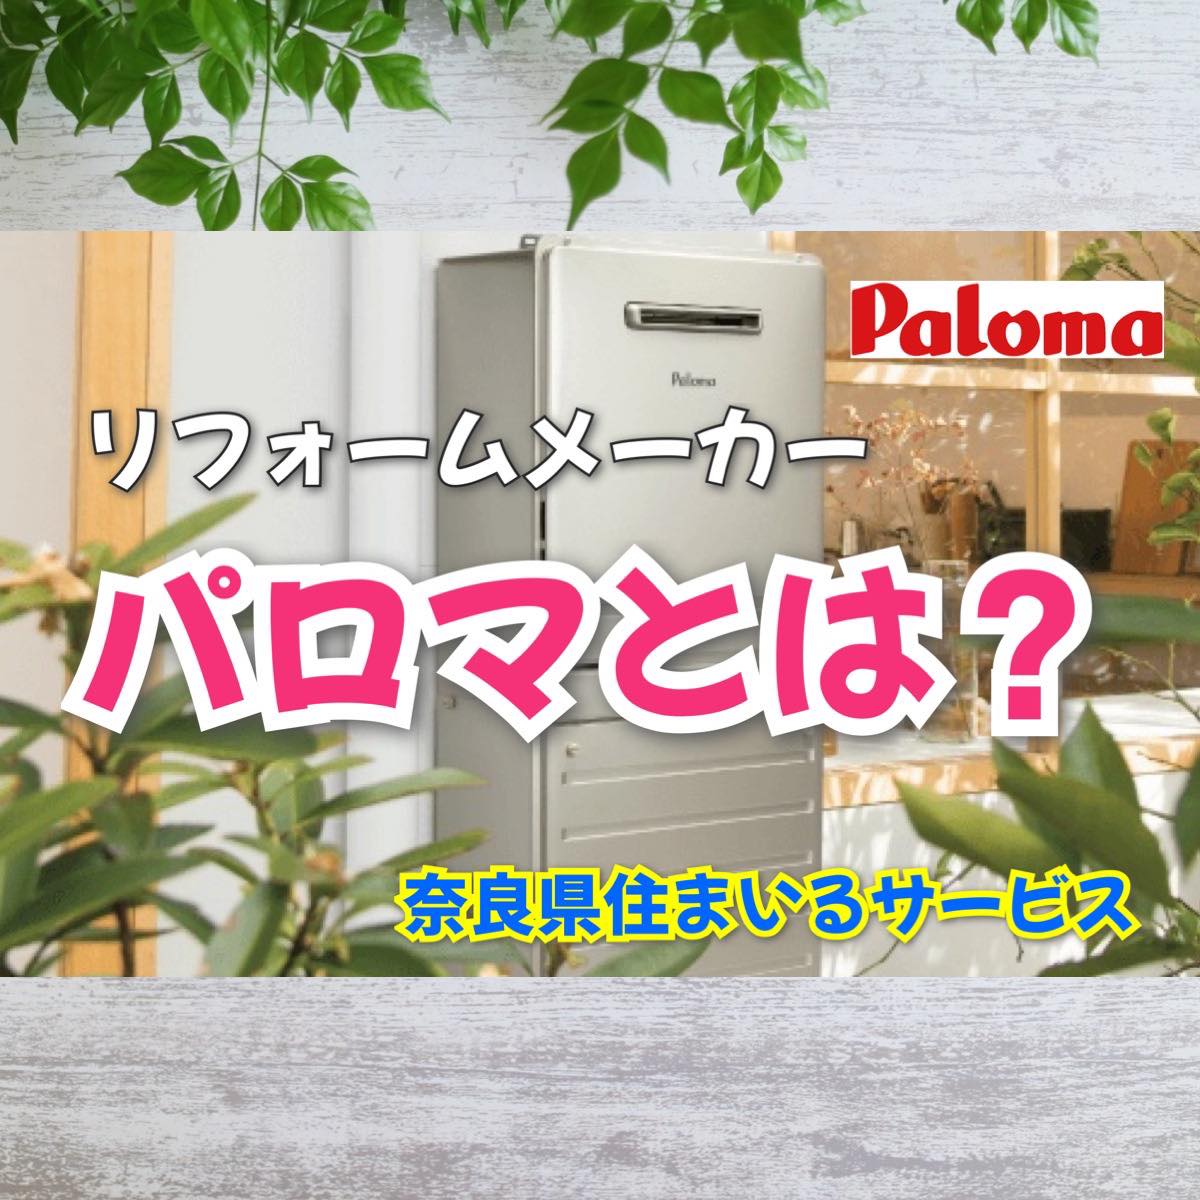 Palomaパロマとは？ガス器具メーカー紹介：奈良県のリフォーム会社が紹介 | あなたの街のお助けヒーロー｜住まいるサービス